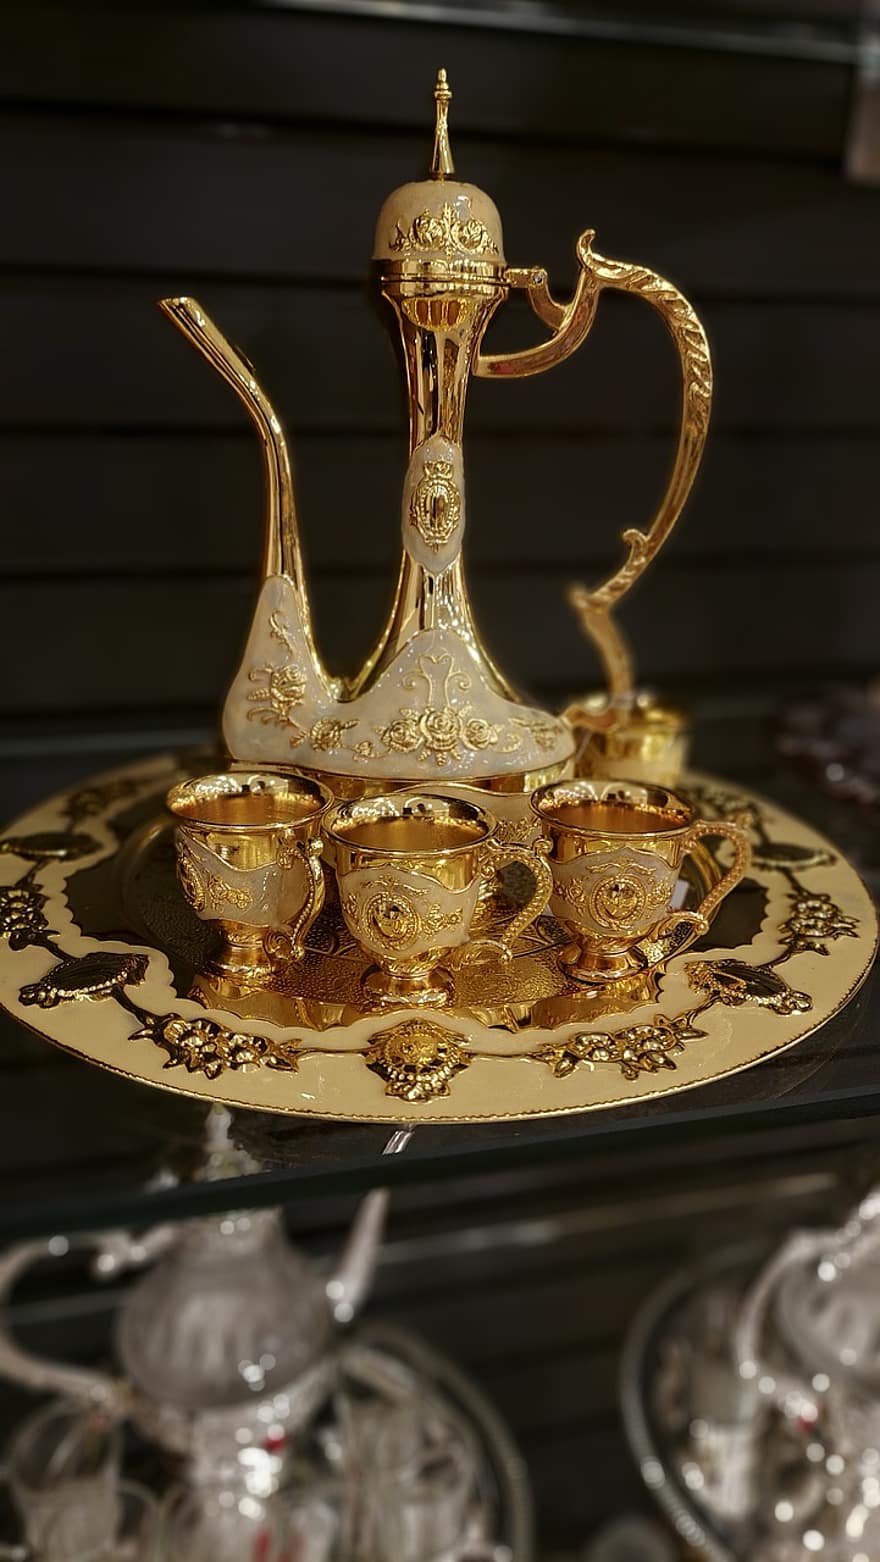 Златен чайник, чаен комплект, Богато украсен комплект за чай, култури, украса, злато, античен, едър план, лъскав, метал, сувенир